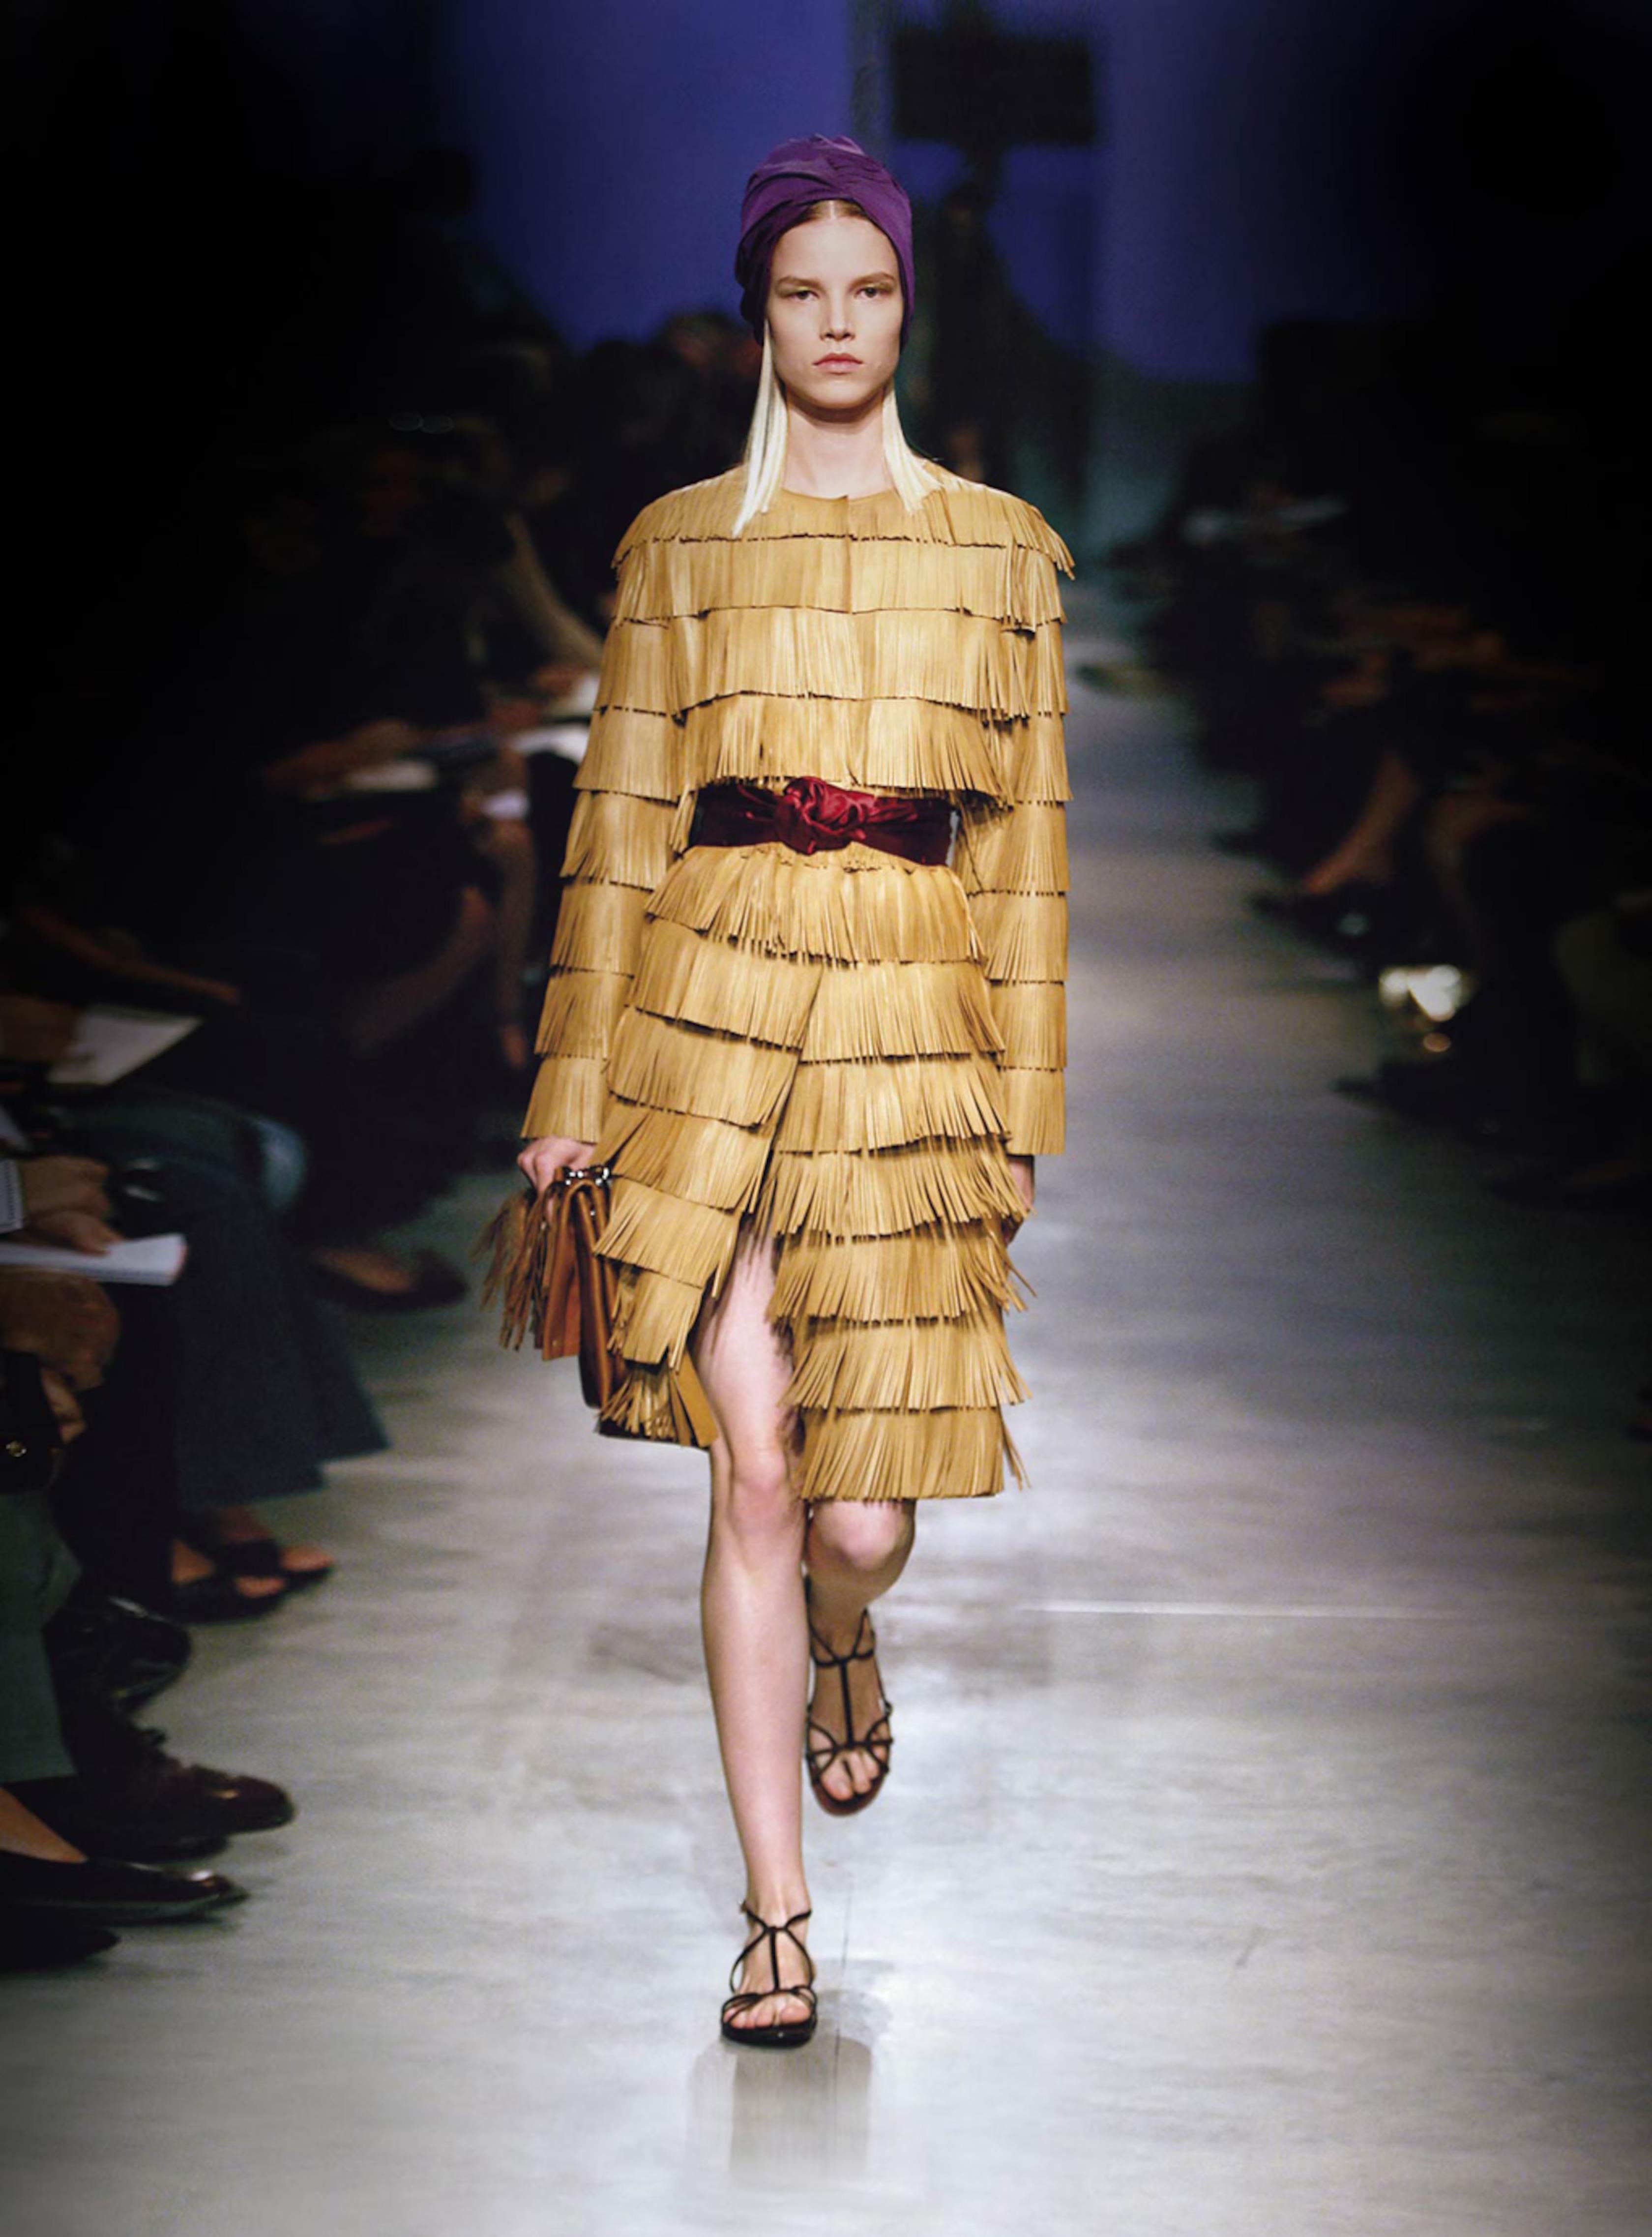 Miuccia Prada weiß, wie man modern ist. Durch den meisterhaften Einsatz von Textur, Farbe und Styling kreiert Prada immer wieder auffallend schlichte Designs mit vielen inspirierenden Details. In Anlehnung an YSL und seine Vorliebe für Nordafrika